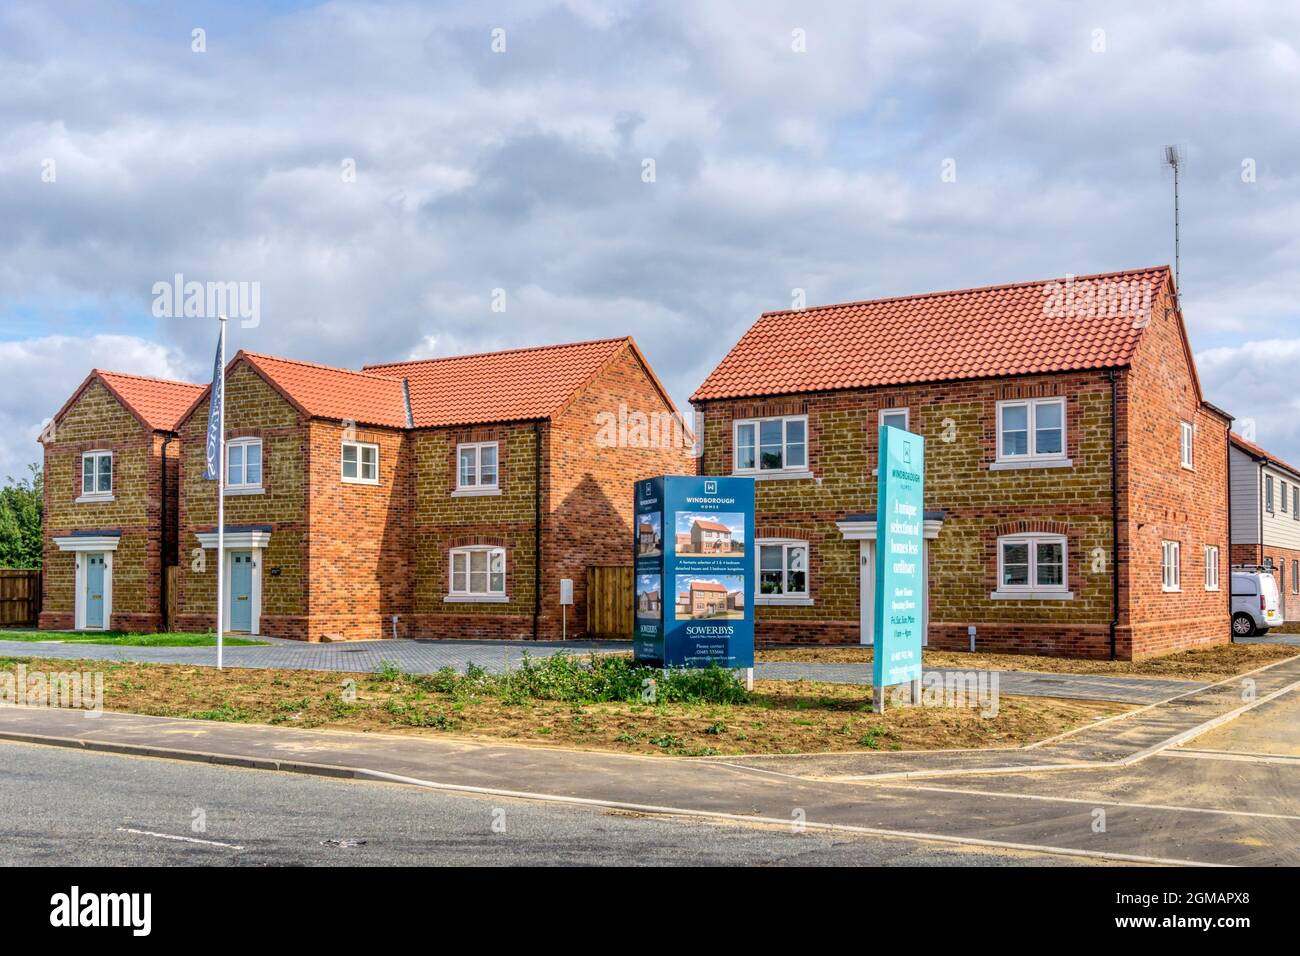 Neue freistehende Wohnungen von Windborough Homes zum Verkauf. Erbaut auf einem Grünfeld-Gelände im Norfolk-Dorf Ingoldisthorpe. Stockfoto